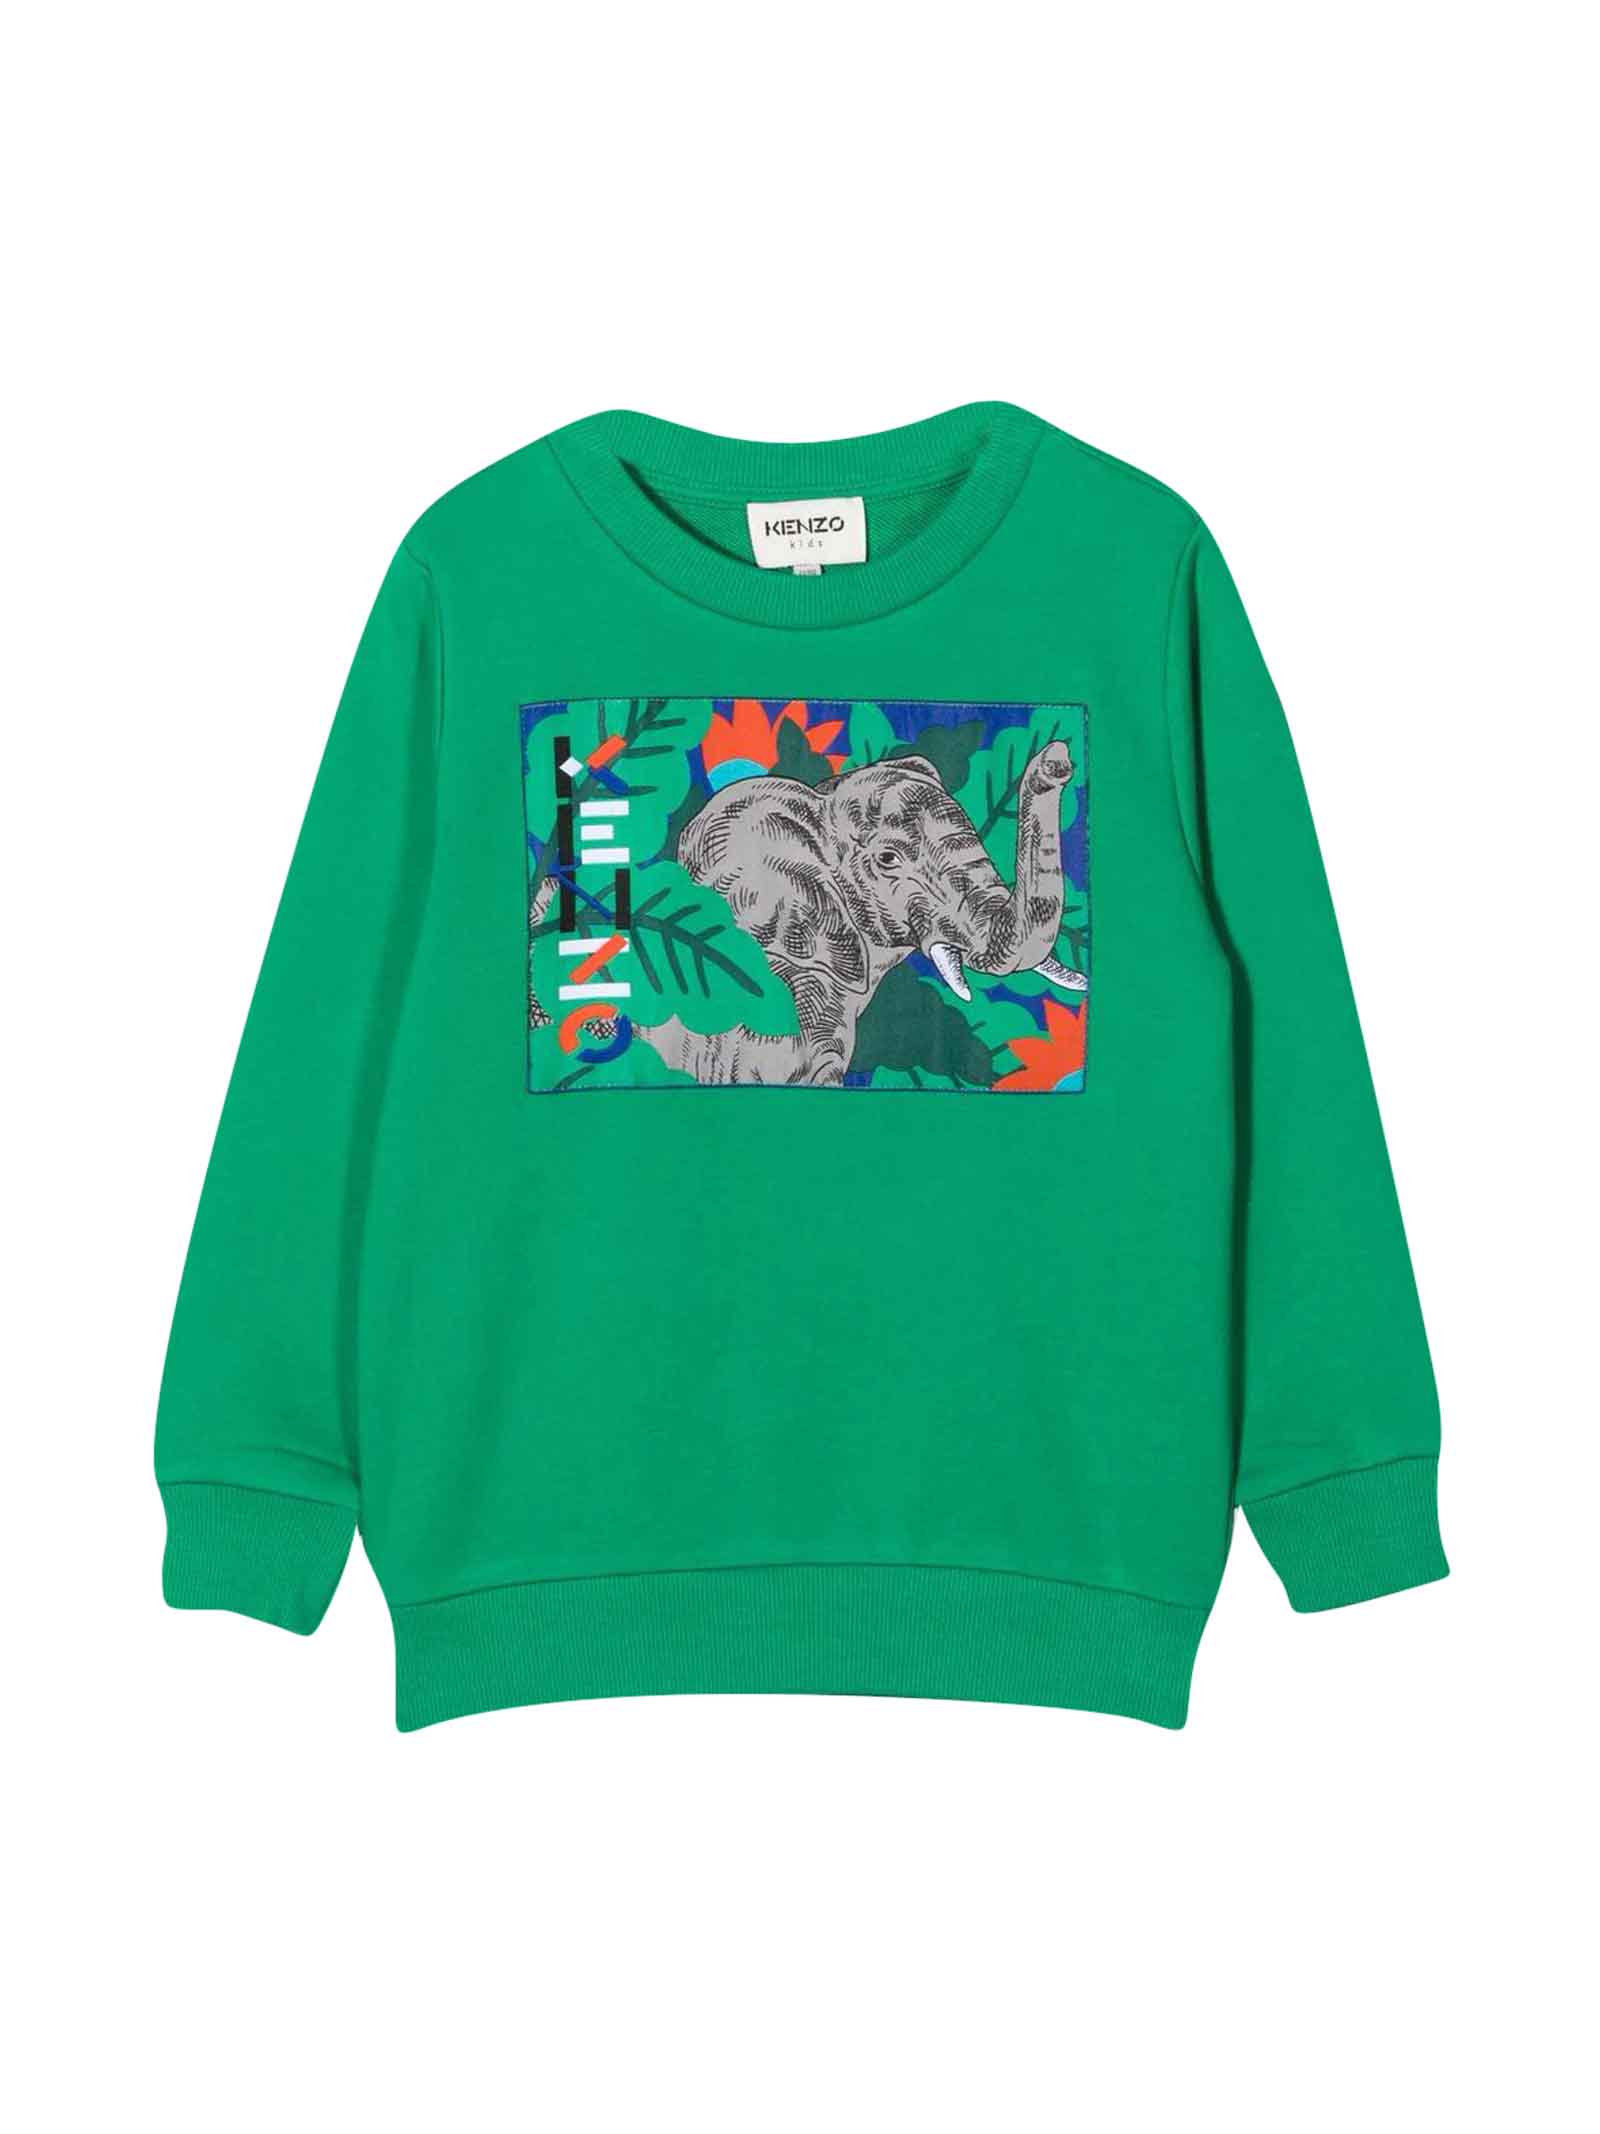 Kenzo Kids Green Sweatshirt Teen Unisex